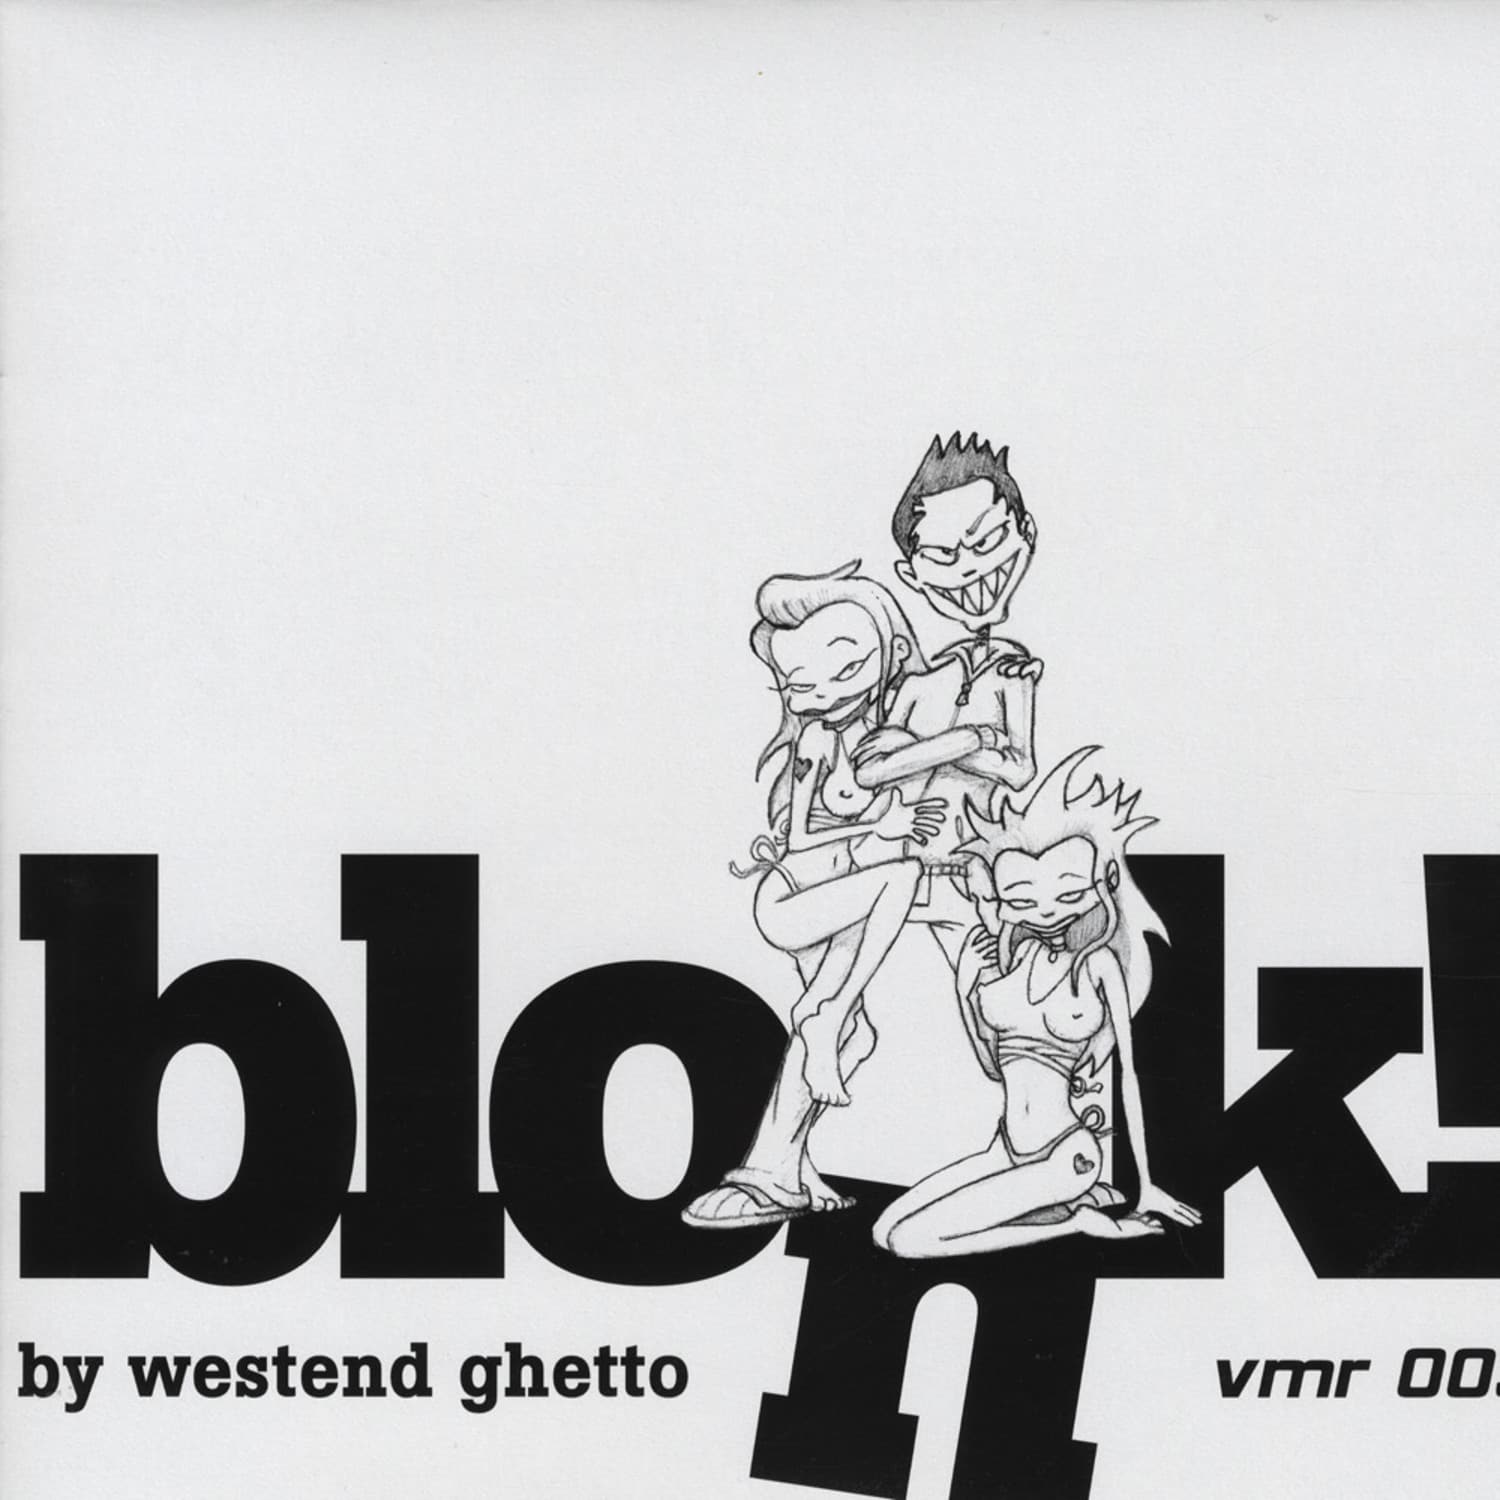 Westend Ghetto - BLONK!